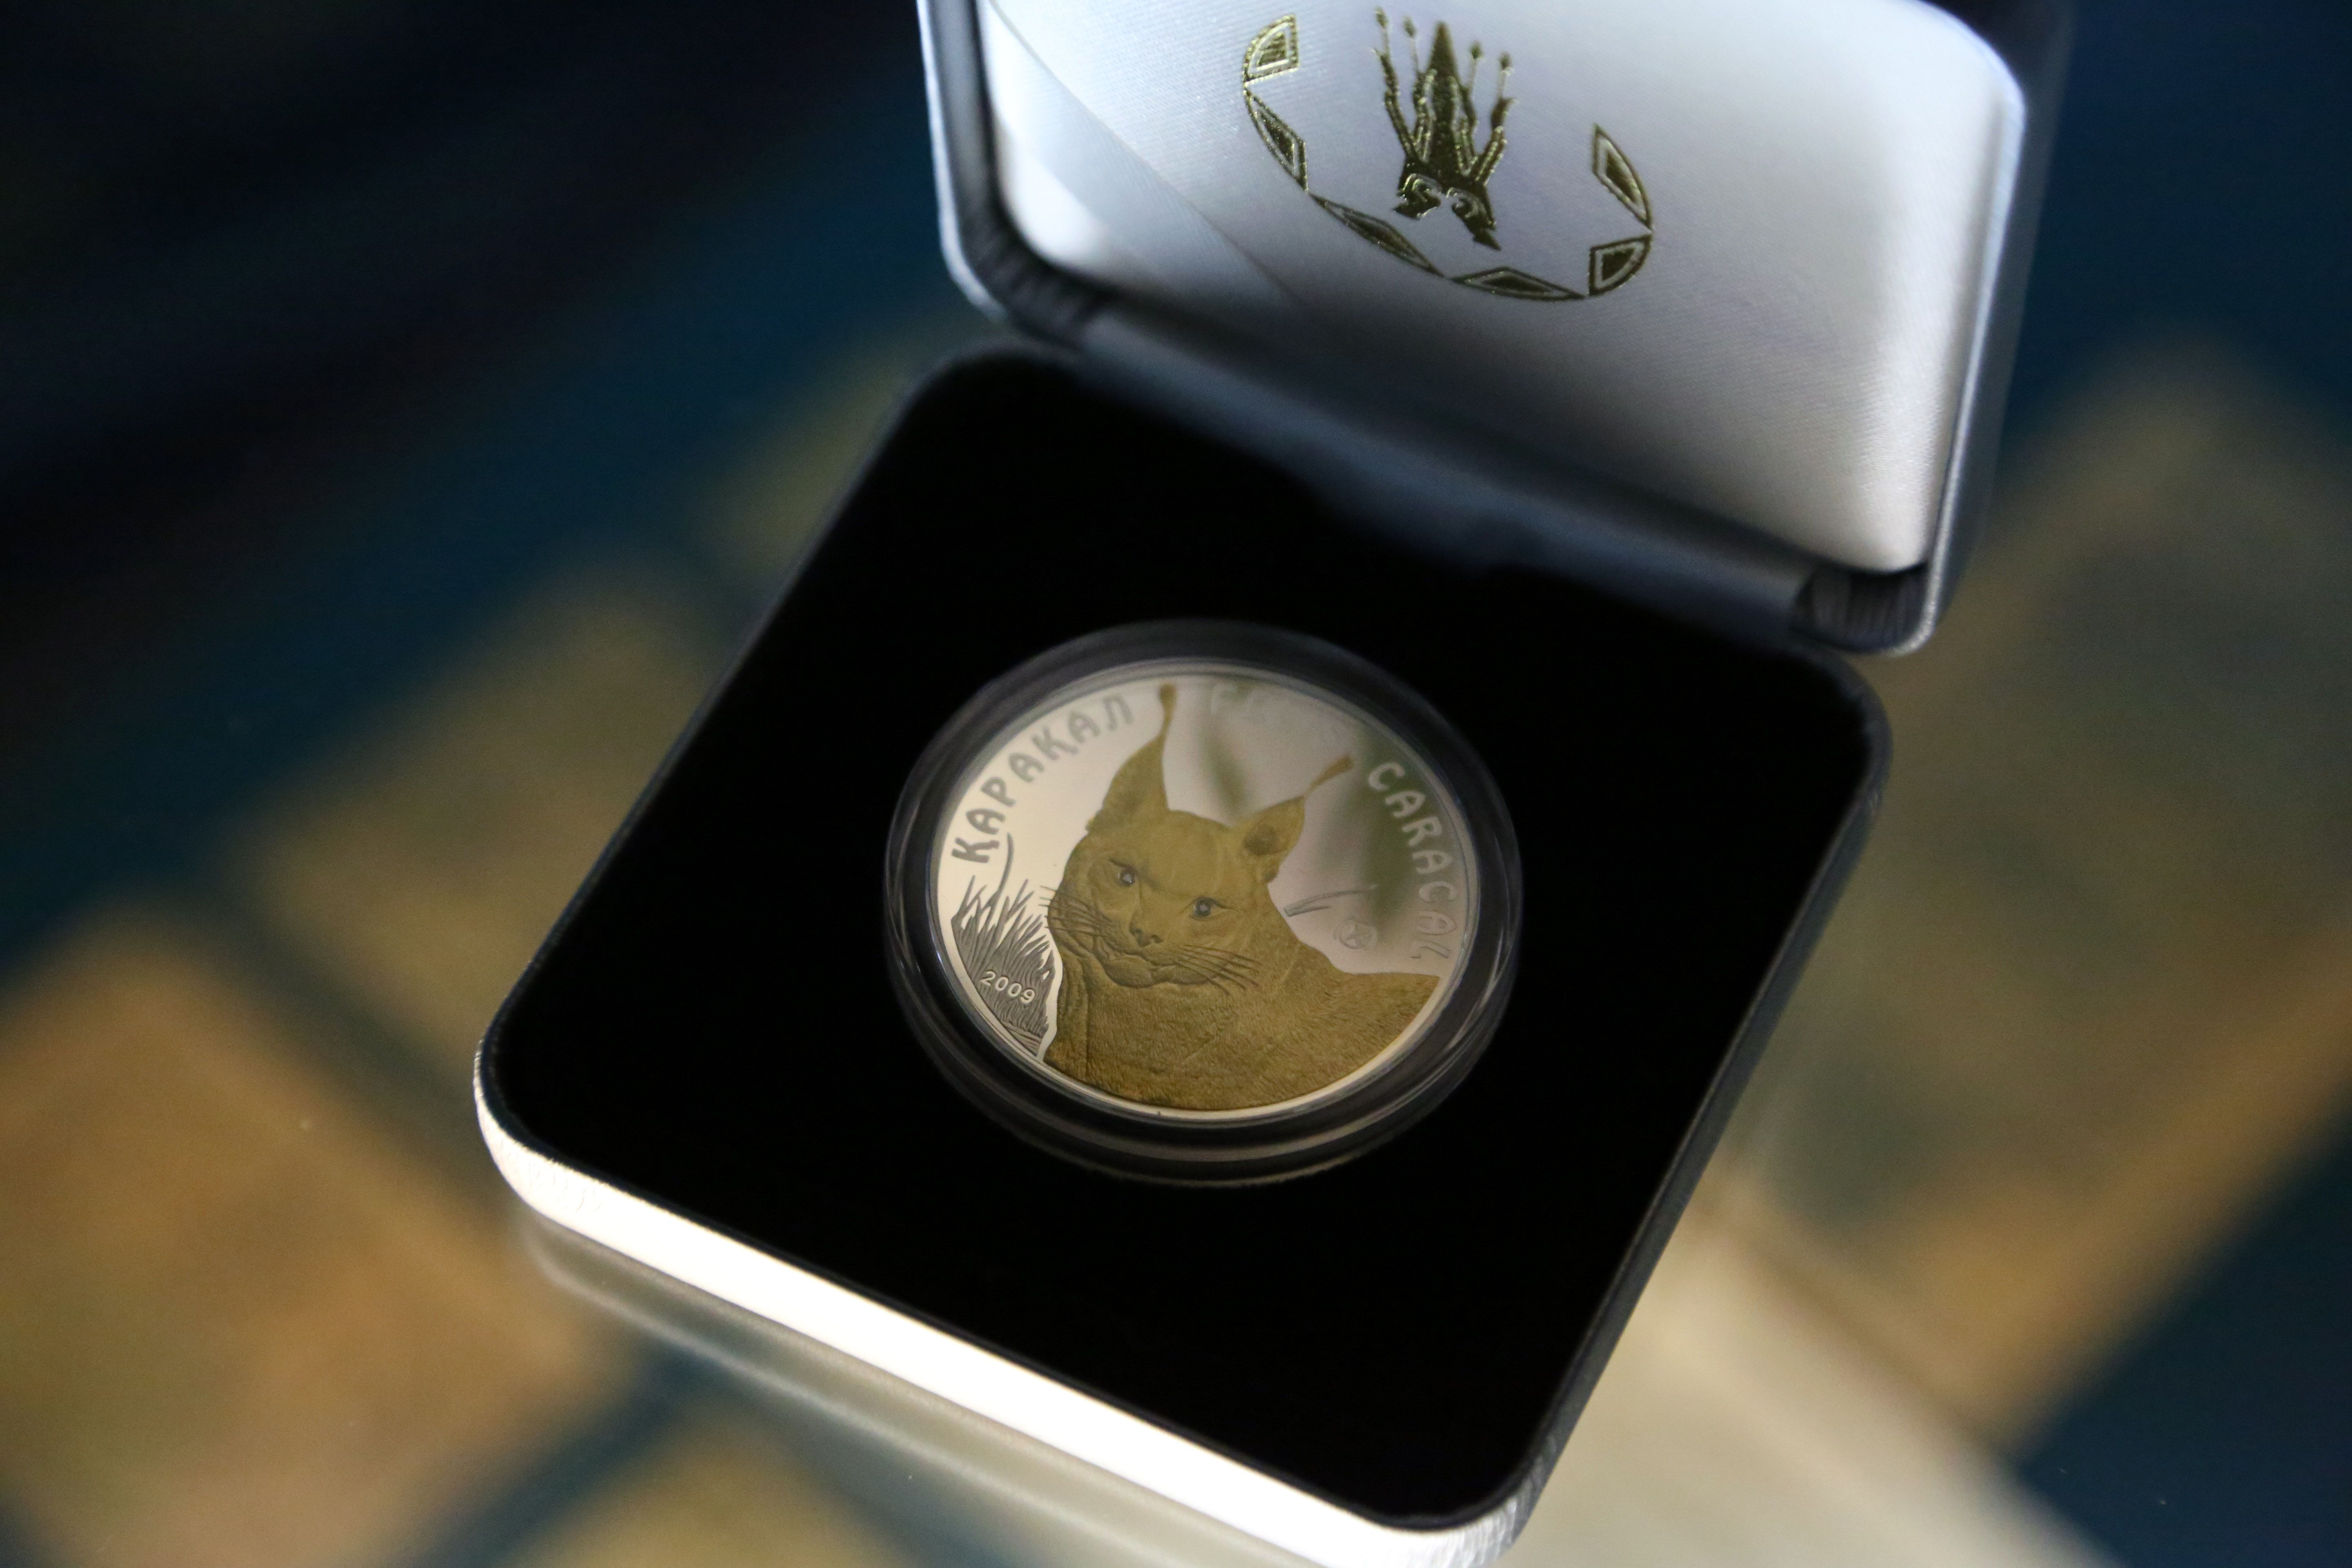 Есть монеты и с бриллиантами. В феврале 2011 года была выпущена монета «Каракул», ее номинал 100 тенге. Монета изготовлена из серебра  925 пробы, с двумя вставками из бриллиантов диаметром до одного миллиметра каждый, качество изготовления – «proof». На оборотной стороне монеты нанесено позолоченное изображение каракала. Каракал – это хищное млекопитающее семейства кошачьих. В Казахстане каракал найден на полуострове Бузачи и Мангышлак. Это очень редкое животное, своеобразная пустынная кошка, единственный представитель одноименного подрода в мировой фауне. В Центральной Азии обитает особый, туркменский подвид. Это животное занесено в «Красную книгу».